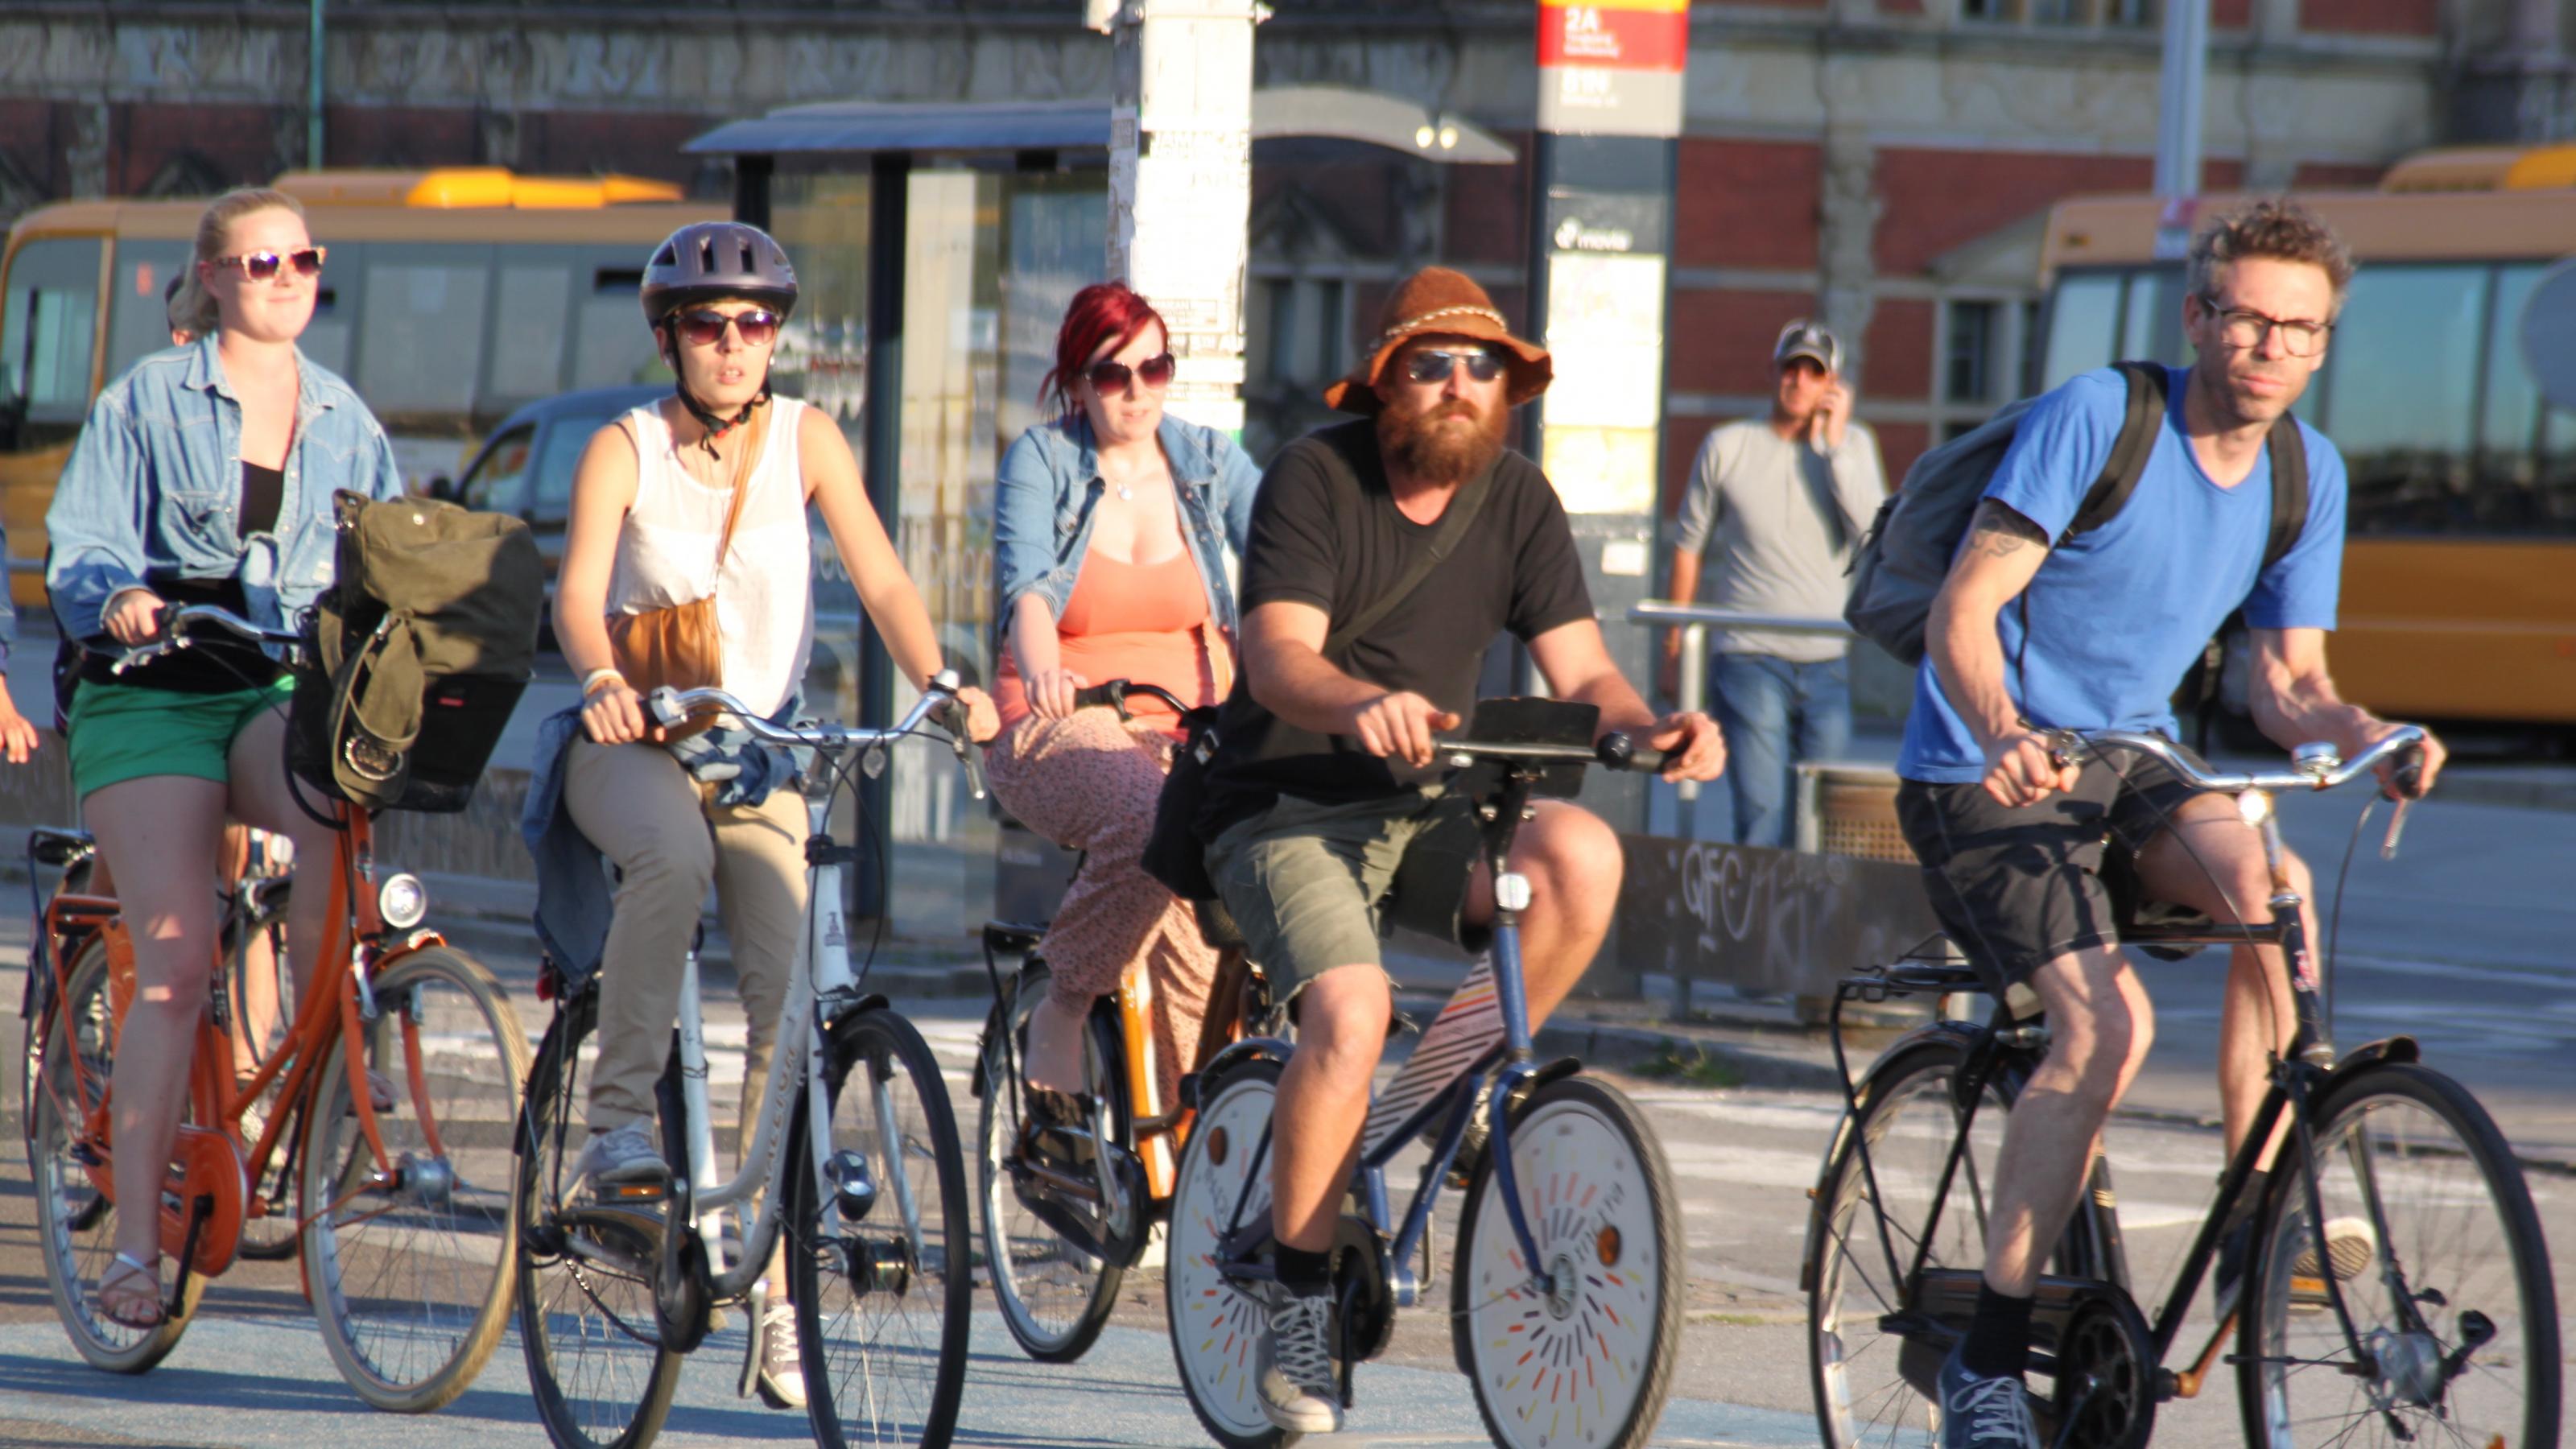 Fünf Radfahrer überqueren auf einem breiten blau gefärbten Radweg entspannt eine Kreuzung.